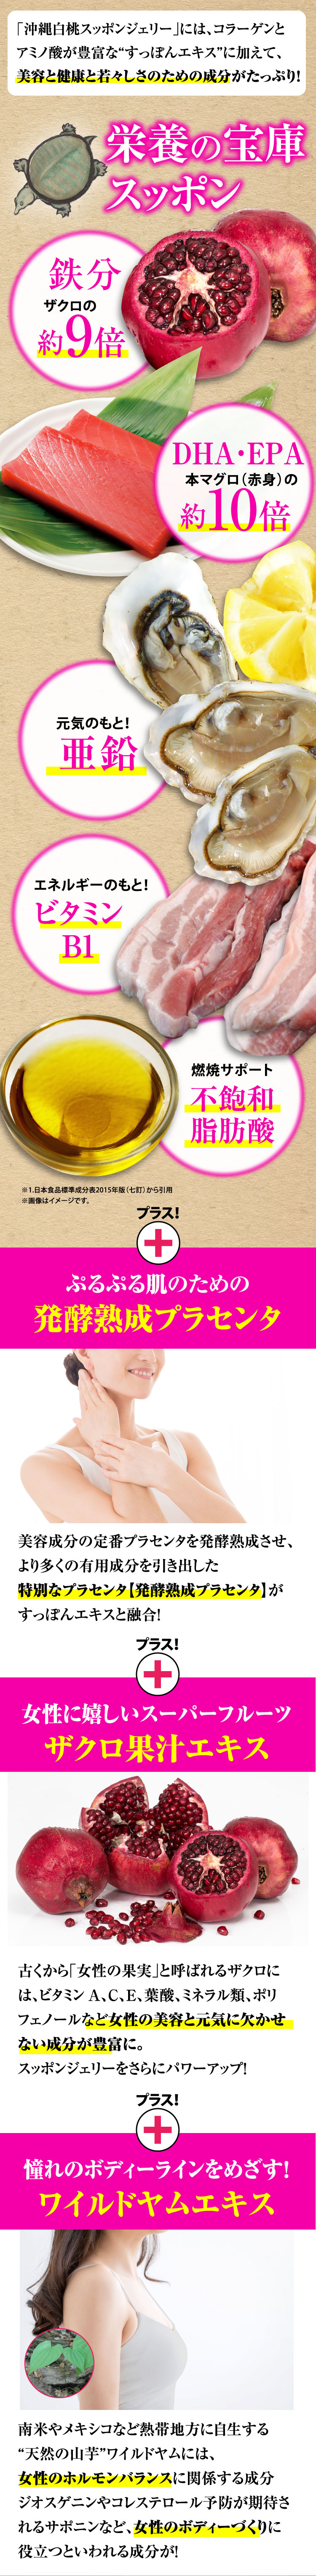 沖縄白桃スッポンジェリーにはコラーゲン、アミノ酸が豊富なスッポンエキスに加え、美容と健康と若々しさのための成分がたっぷり